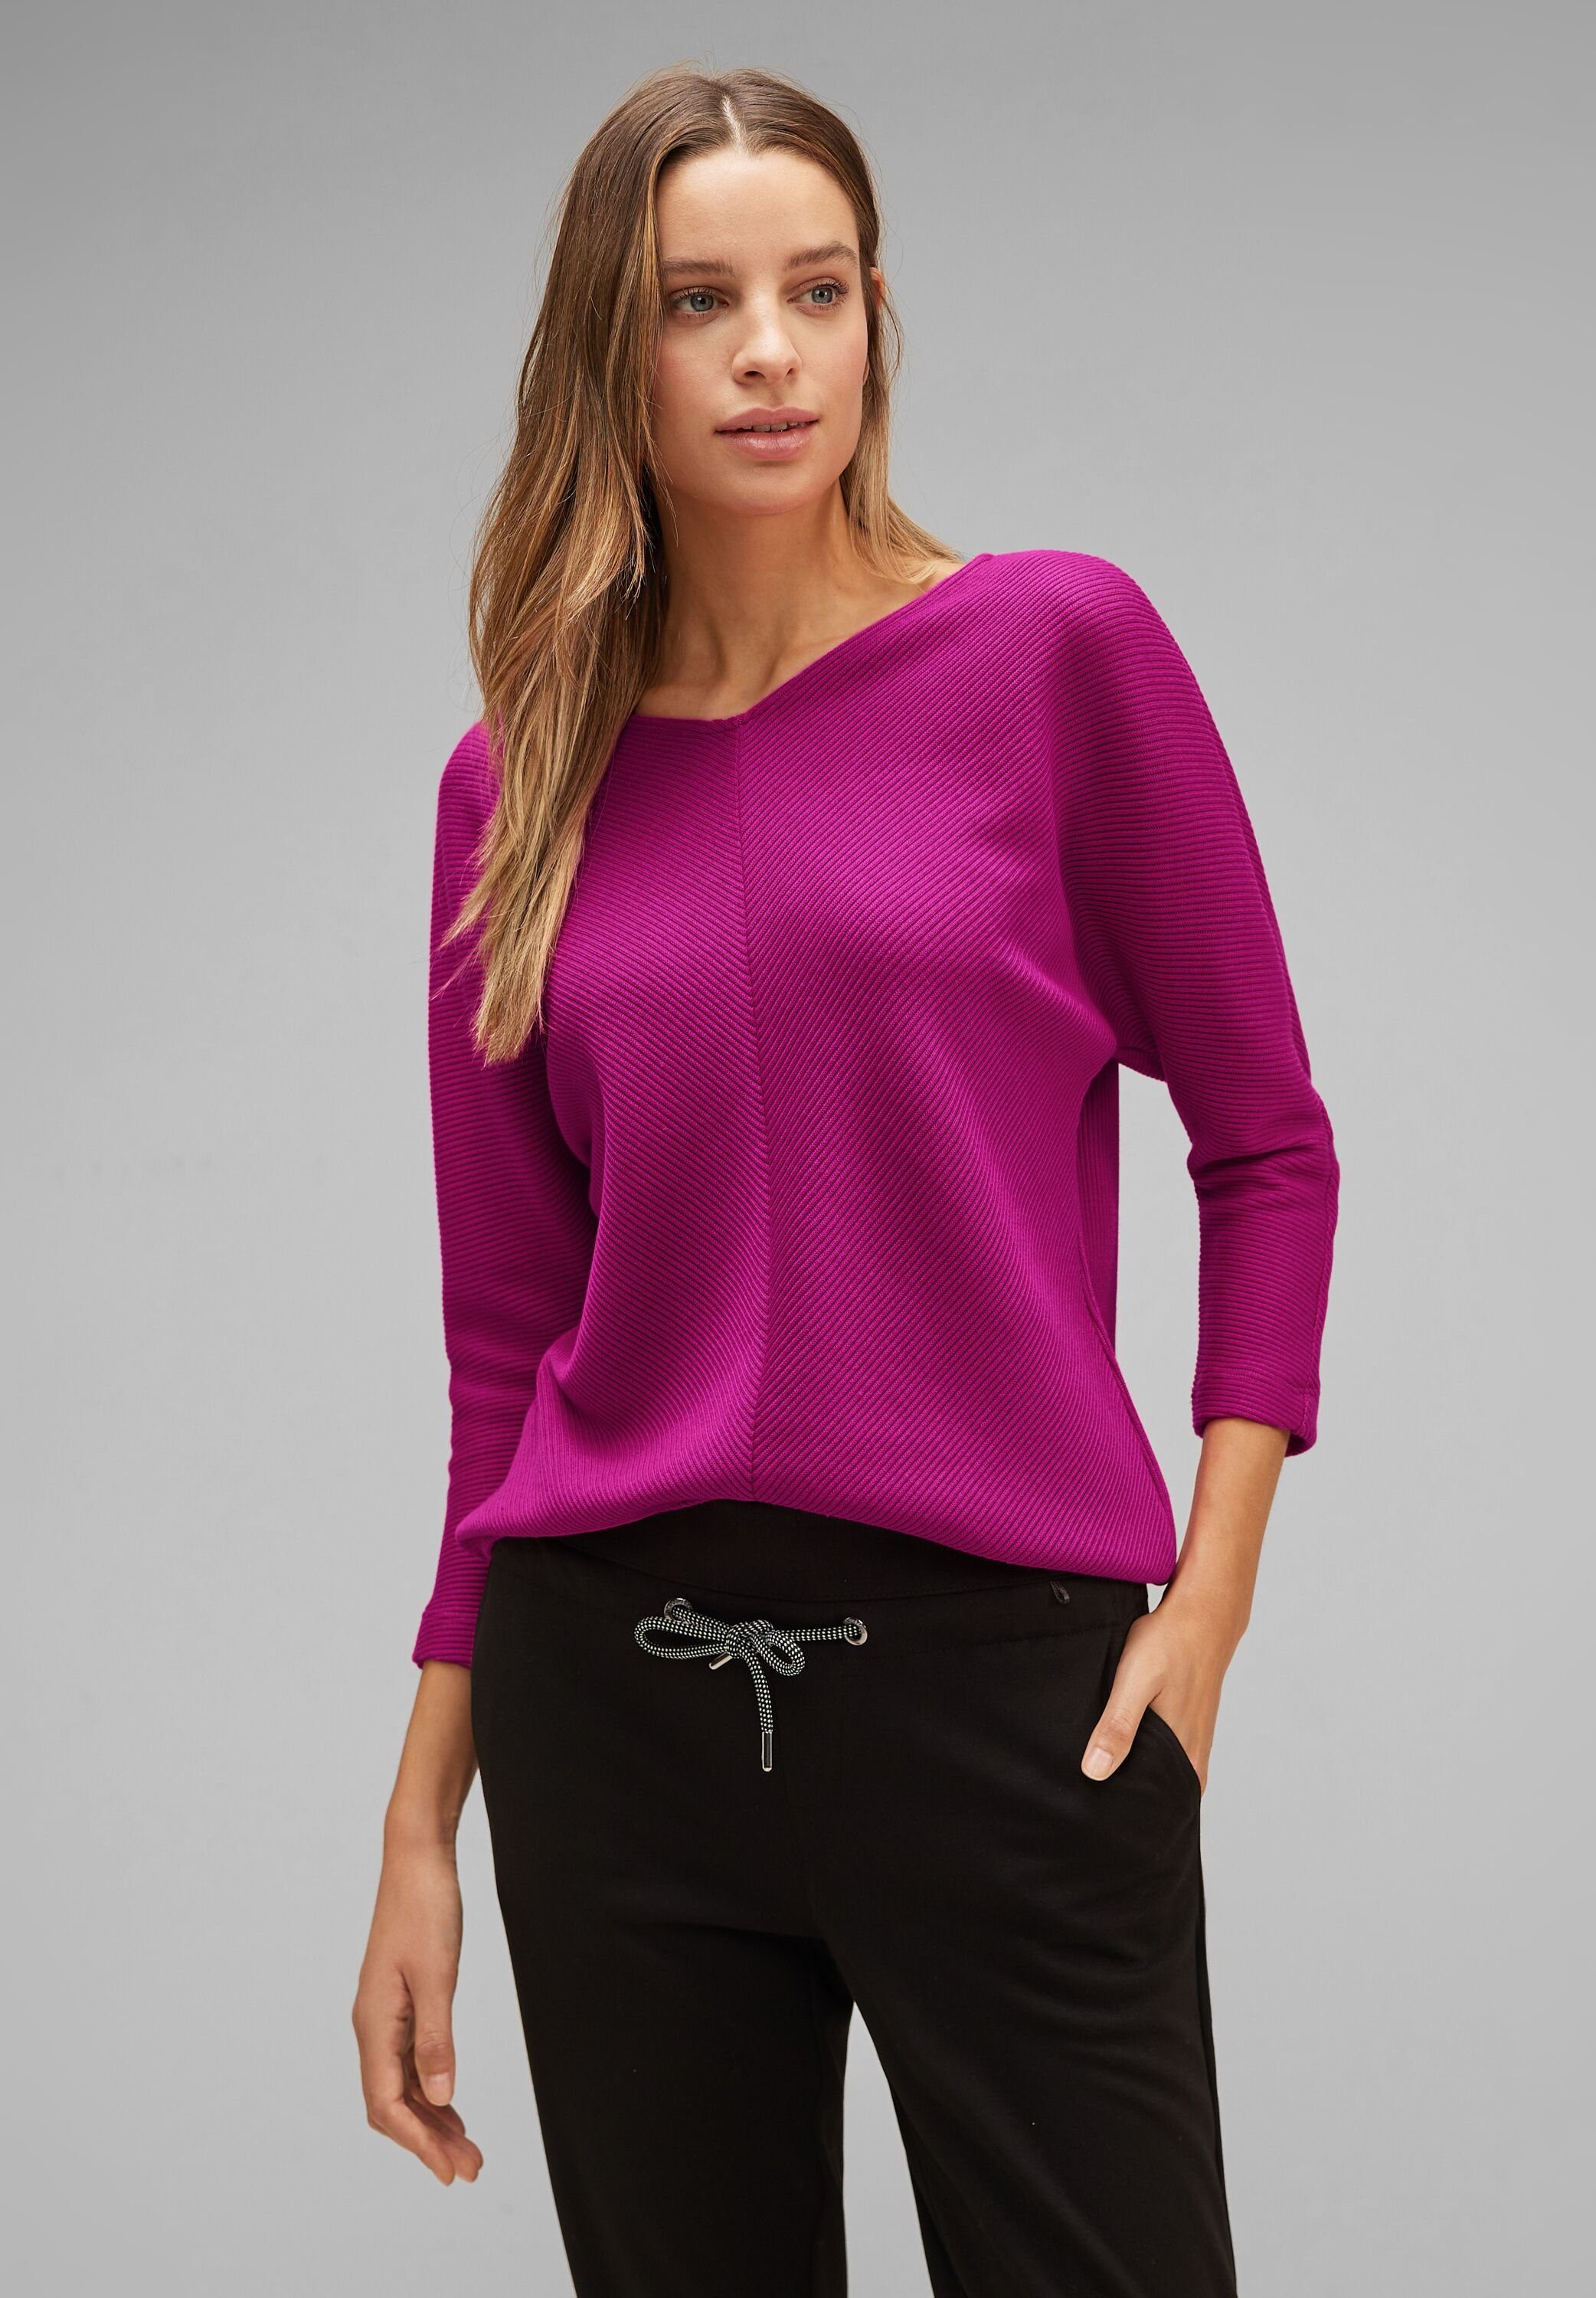 Shirt Streifen-Struktur Diagonal bright 3/4-Arm-Shirt ONE Structure cozy pink STREET mit